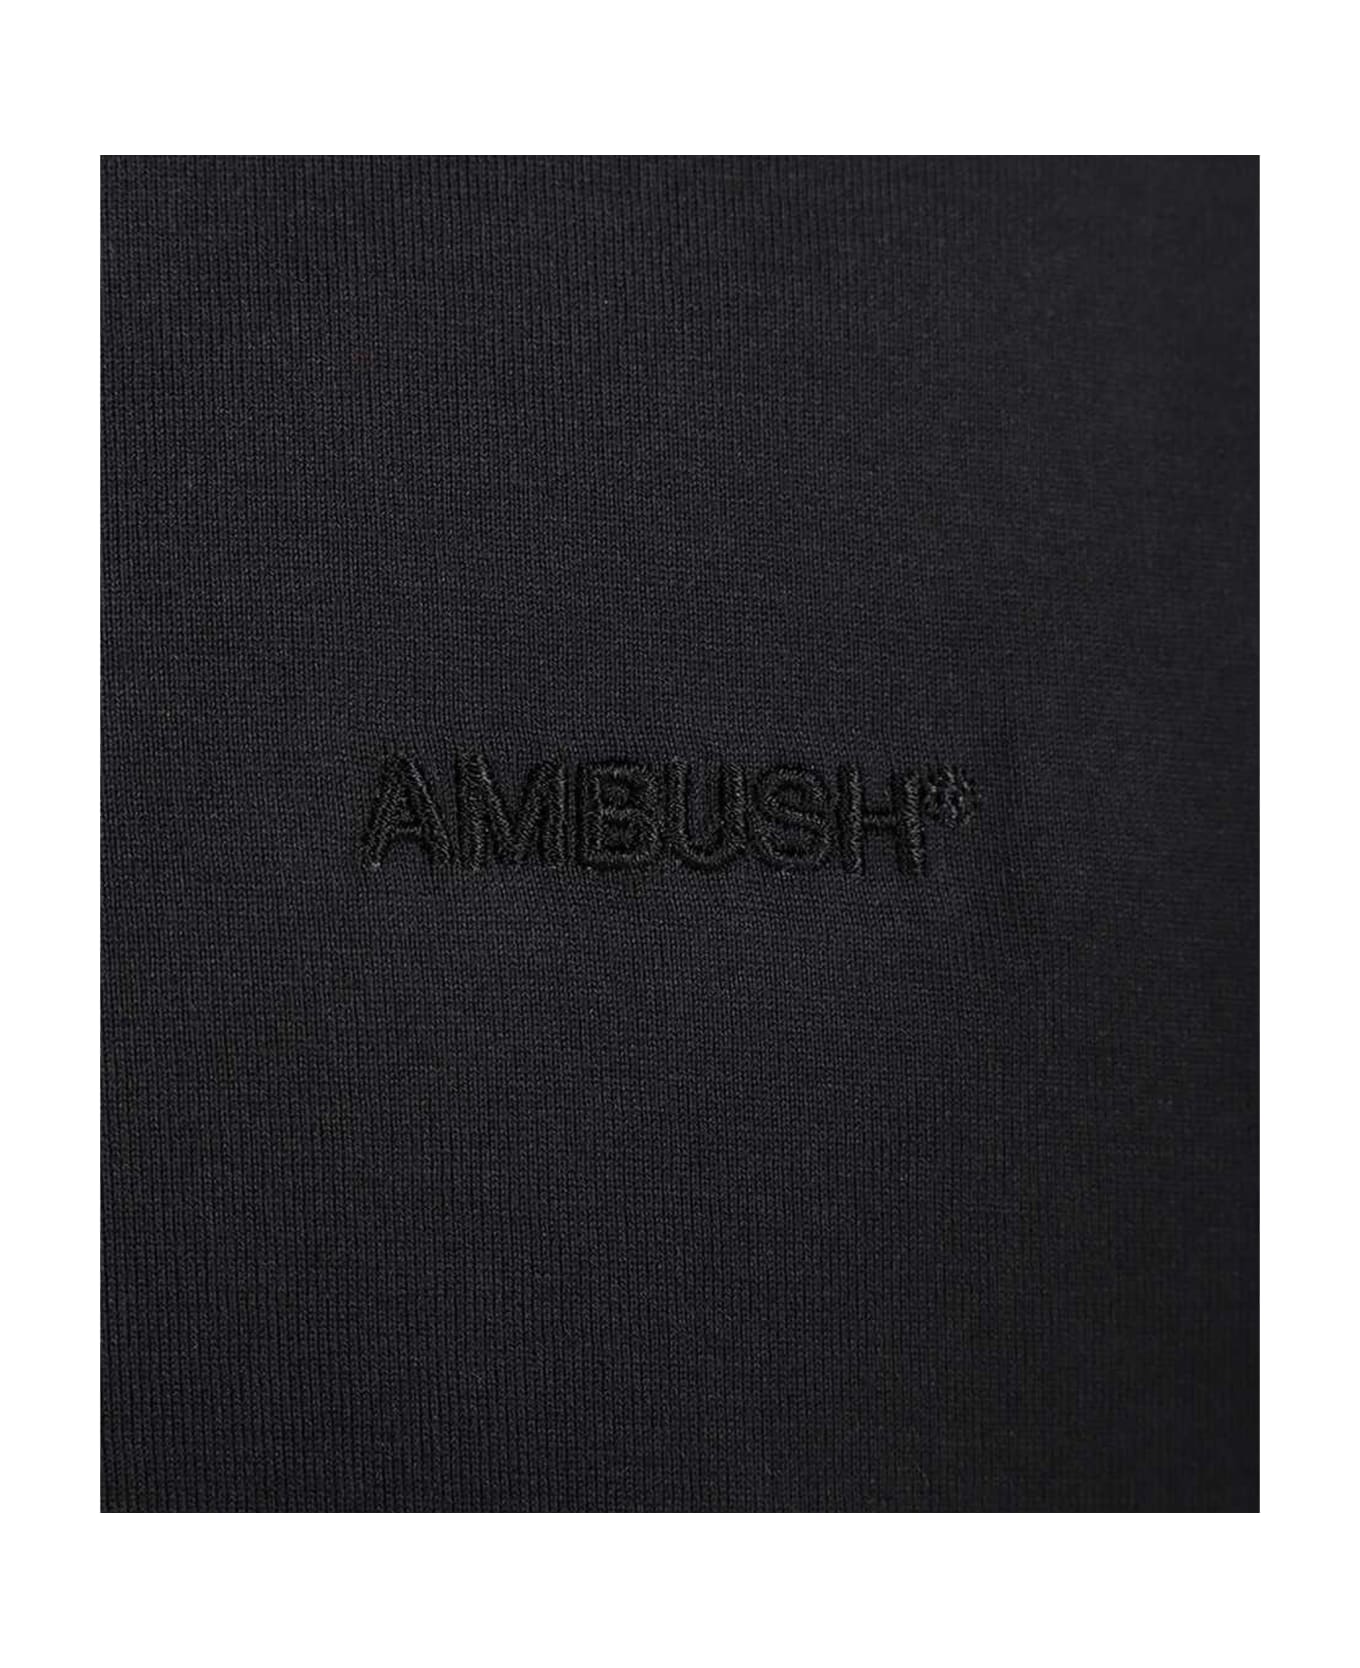 AMBUSH Bomber Jacket - Black ジャケット